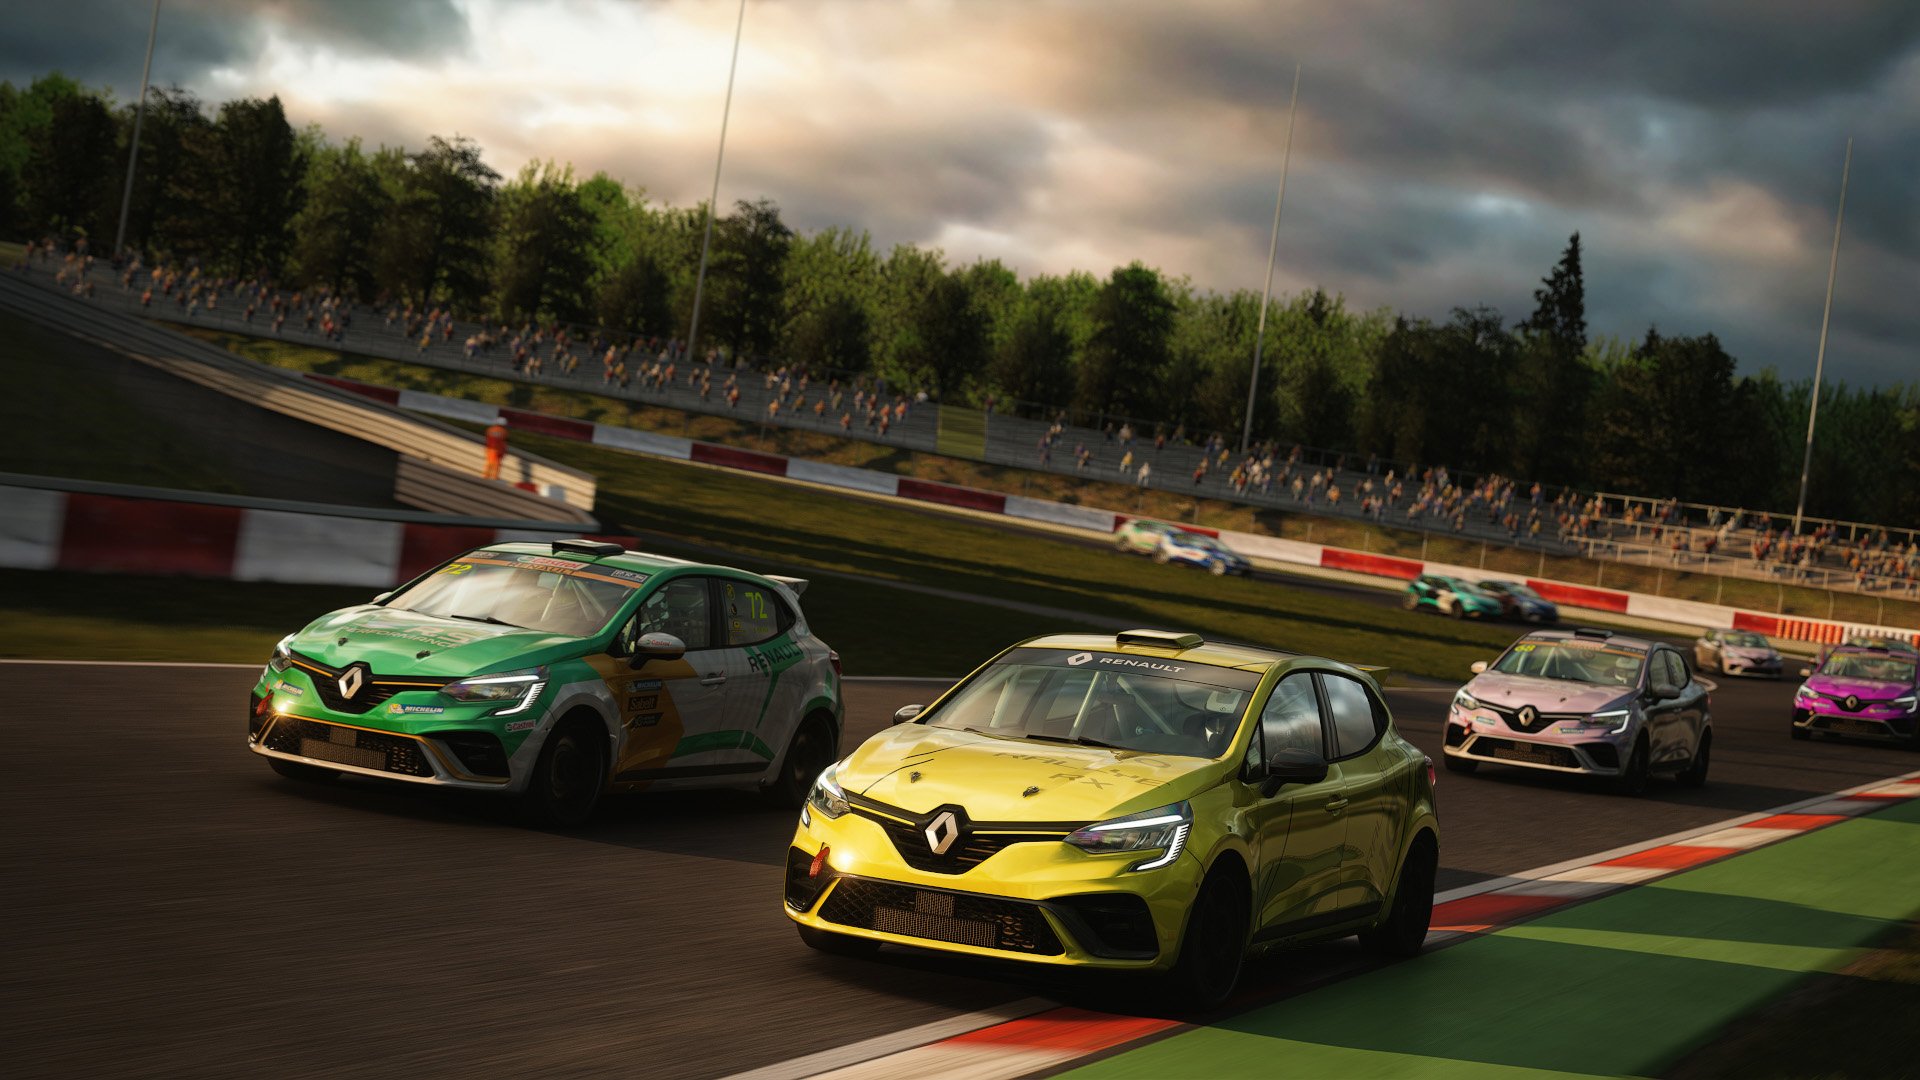 More information about "Assetto Corsa: campionato Renault Clio RS Cup 4FUN Summer, aperte le iscrizioni!"